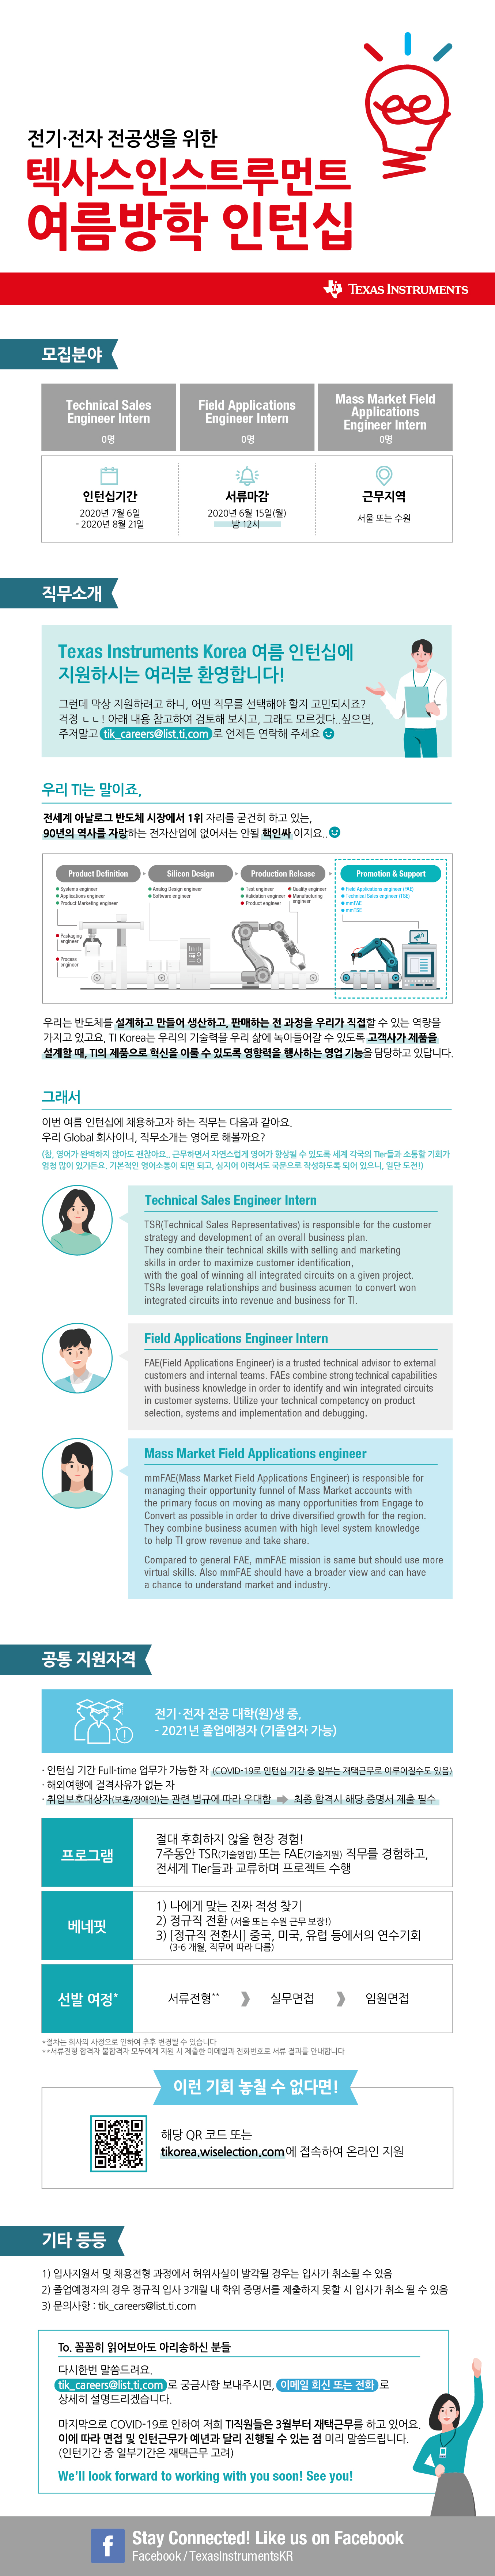 2020 TI Korea 텍사스인스트루먼트 여름방학 인턴십 웹공고문